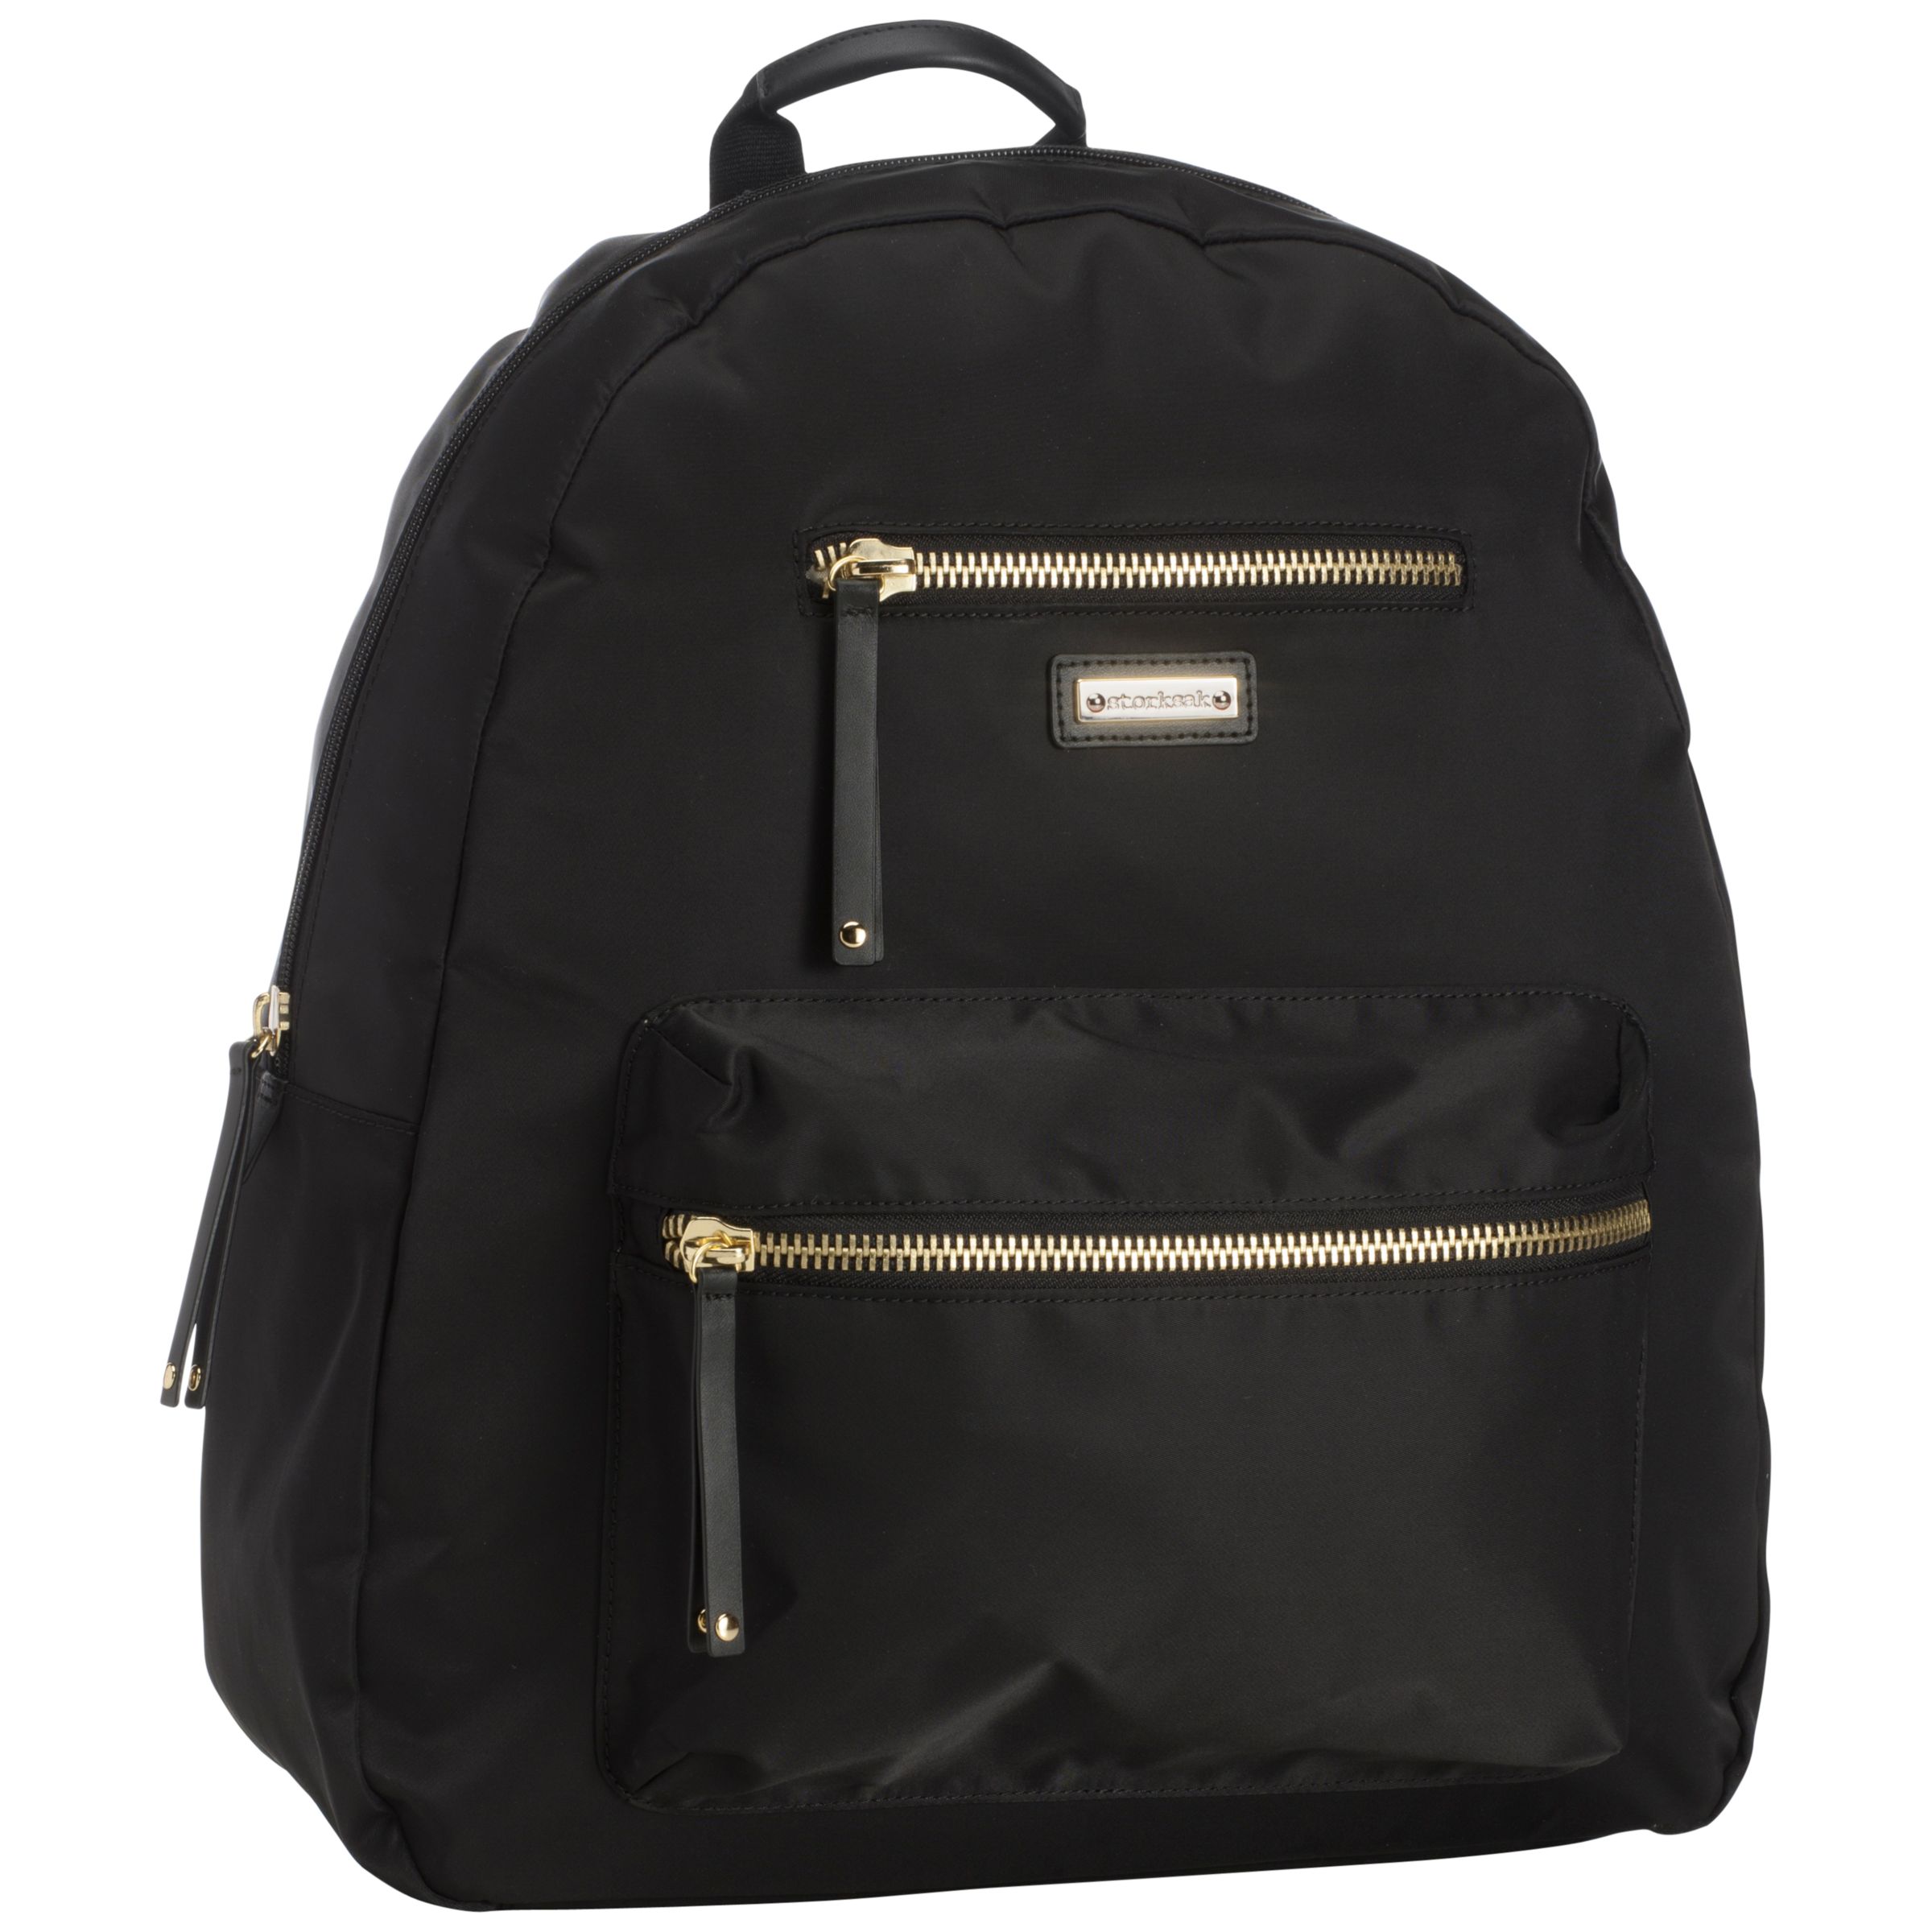 Storksak Charlie Backpack Changing Bag, Black